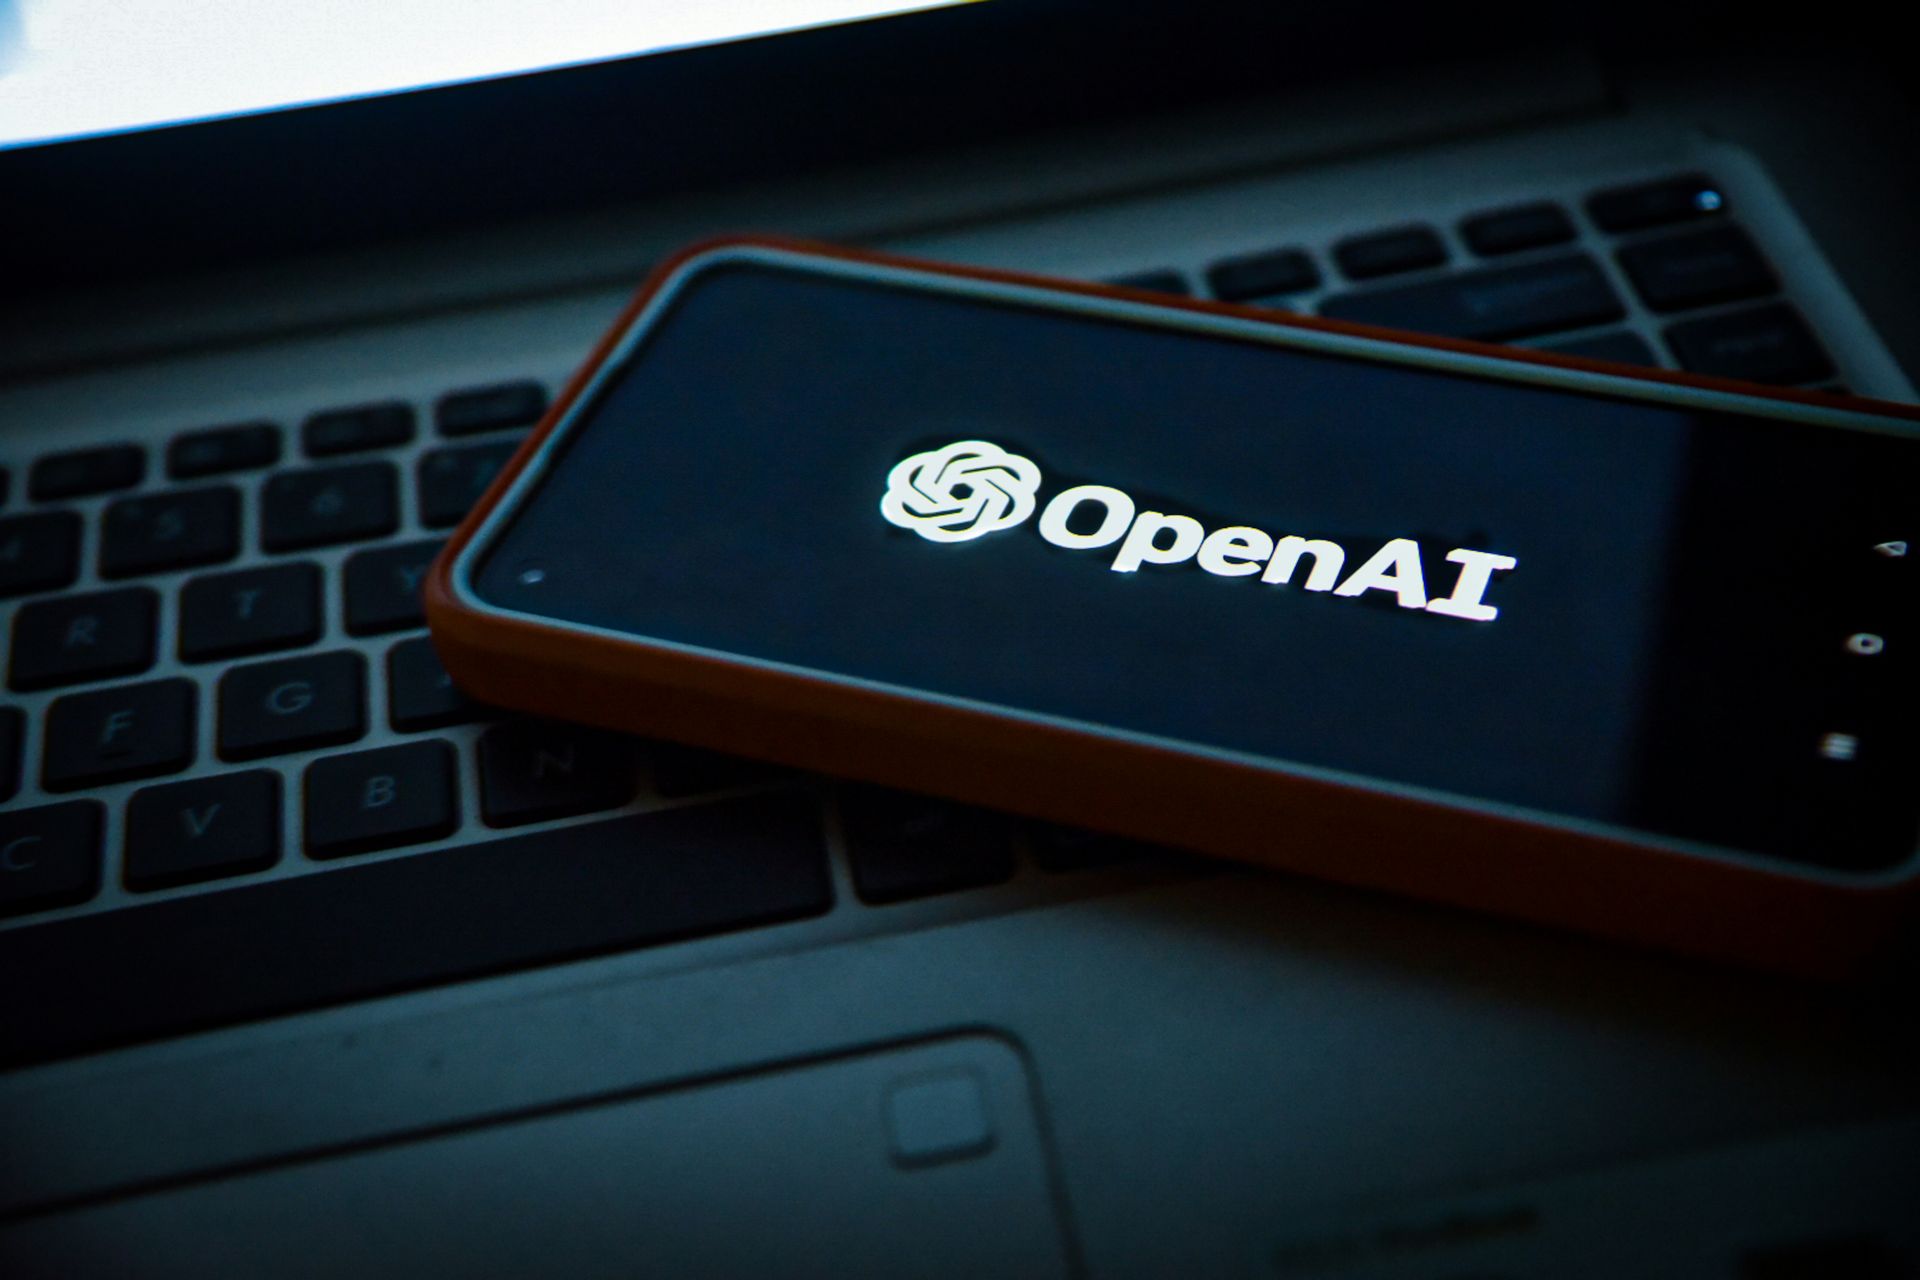 Il motore di ricerca OpenAI rivaleggia con Google